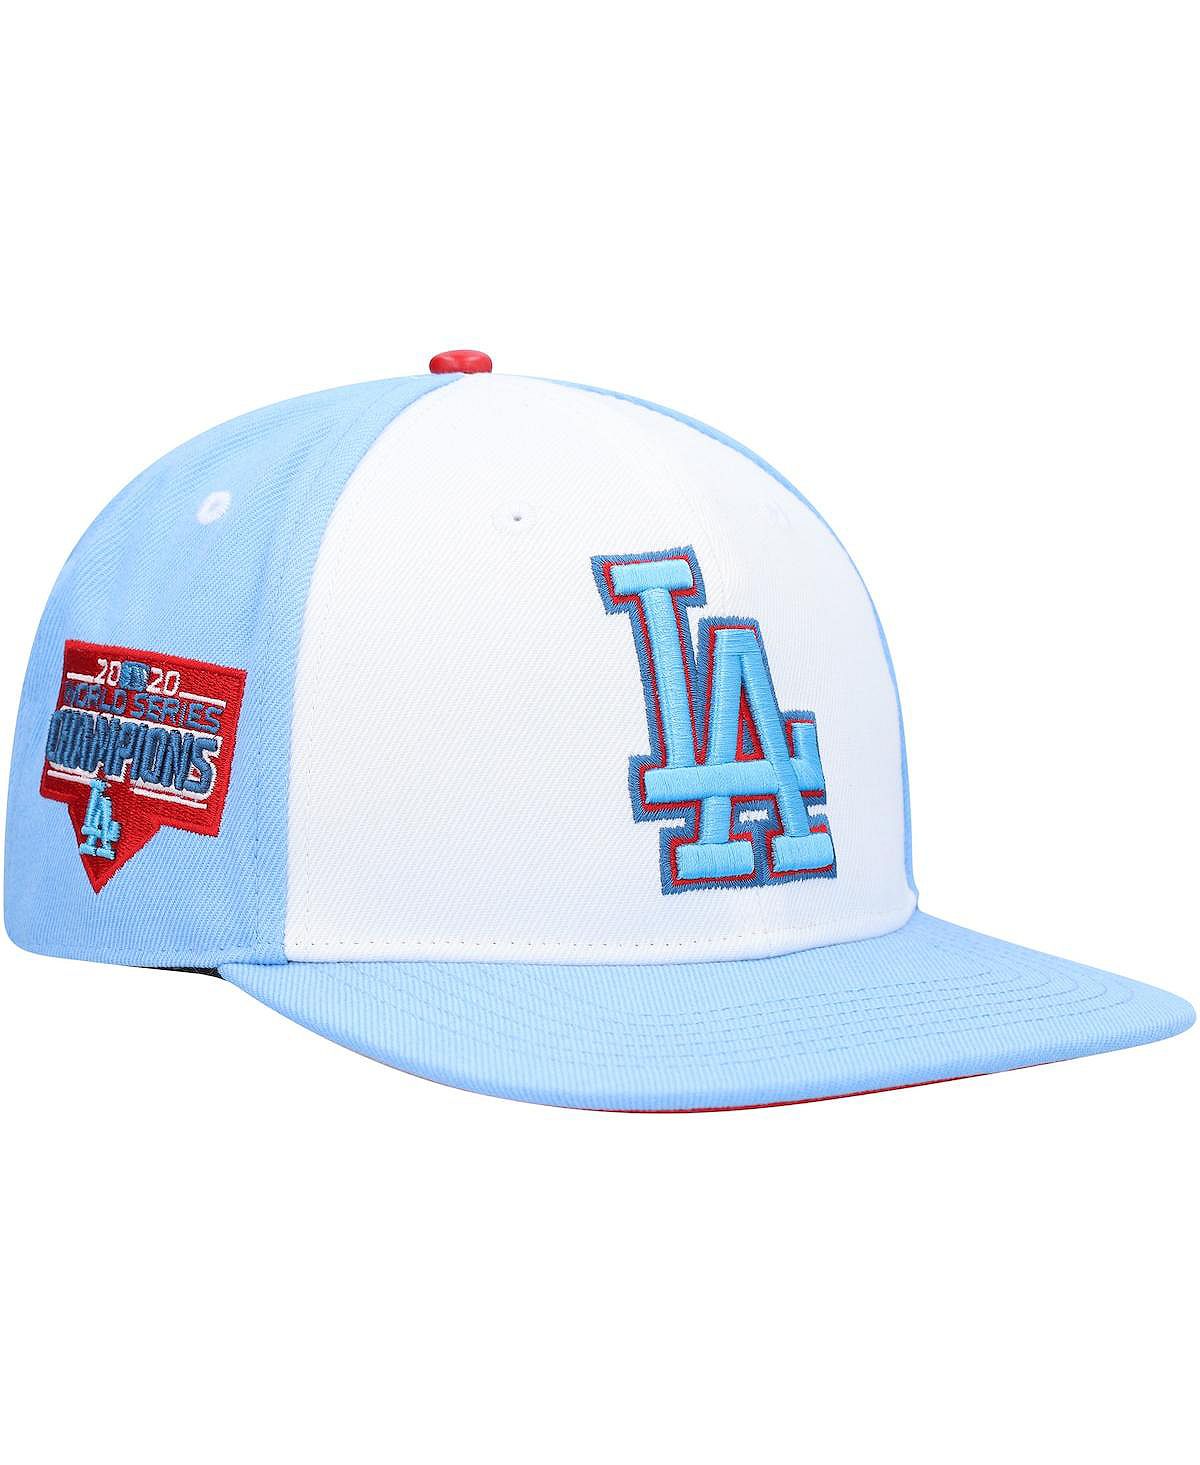 Мужская белая, голубая кепка Los Angeles Dodgers синяя малиновая кепка с капельным мороженым Snapback Pro Standard носки babolat pro 360 white blue 1 пара